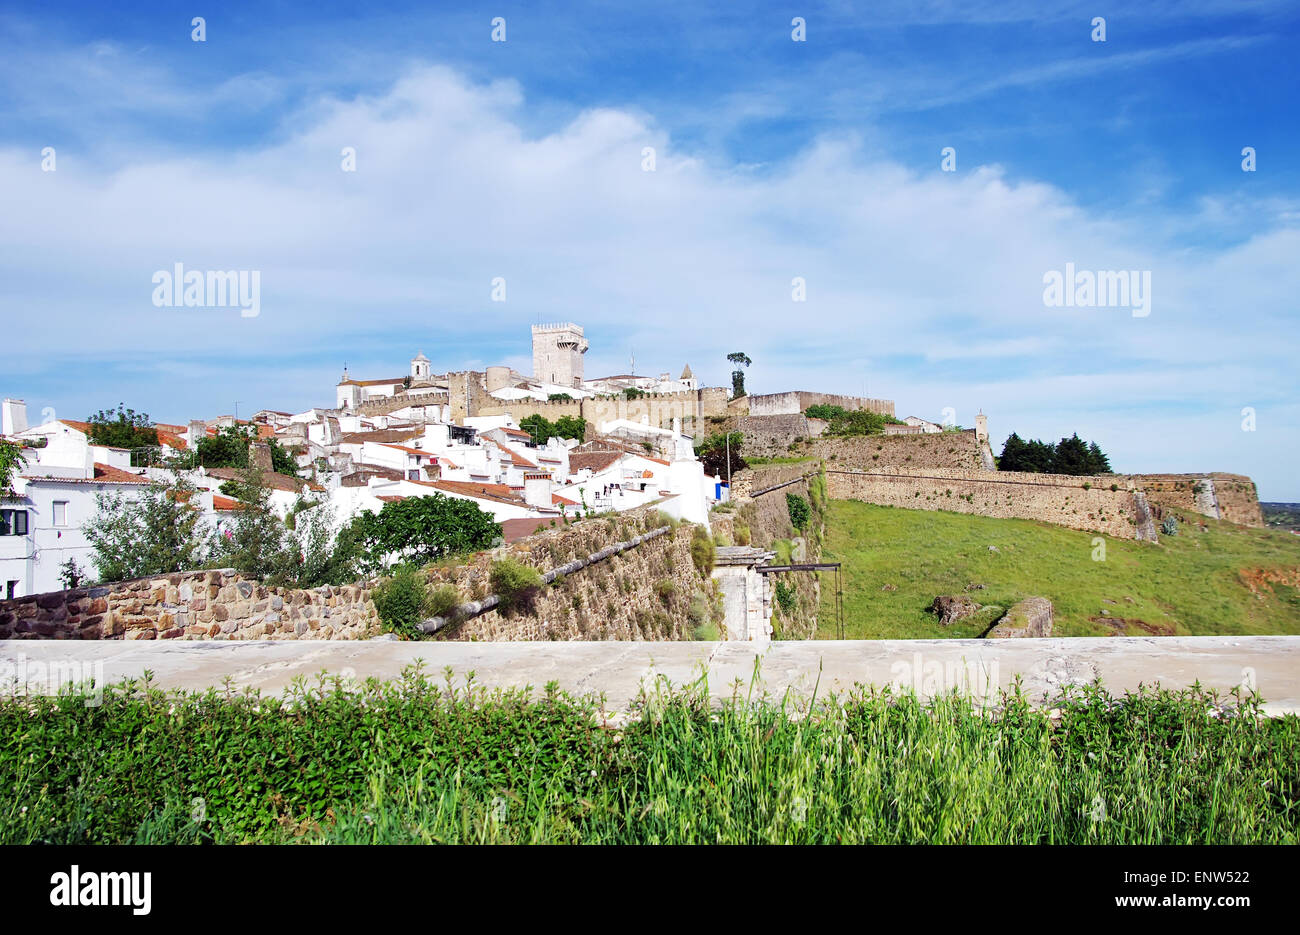 village of Estremoz in Portugal Stock Photo